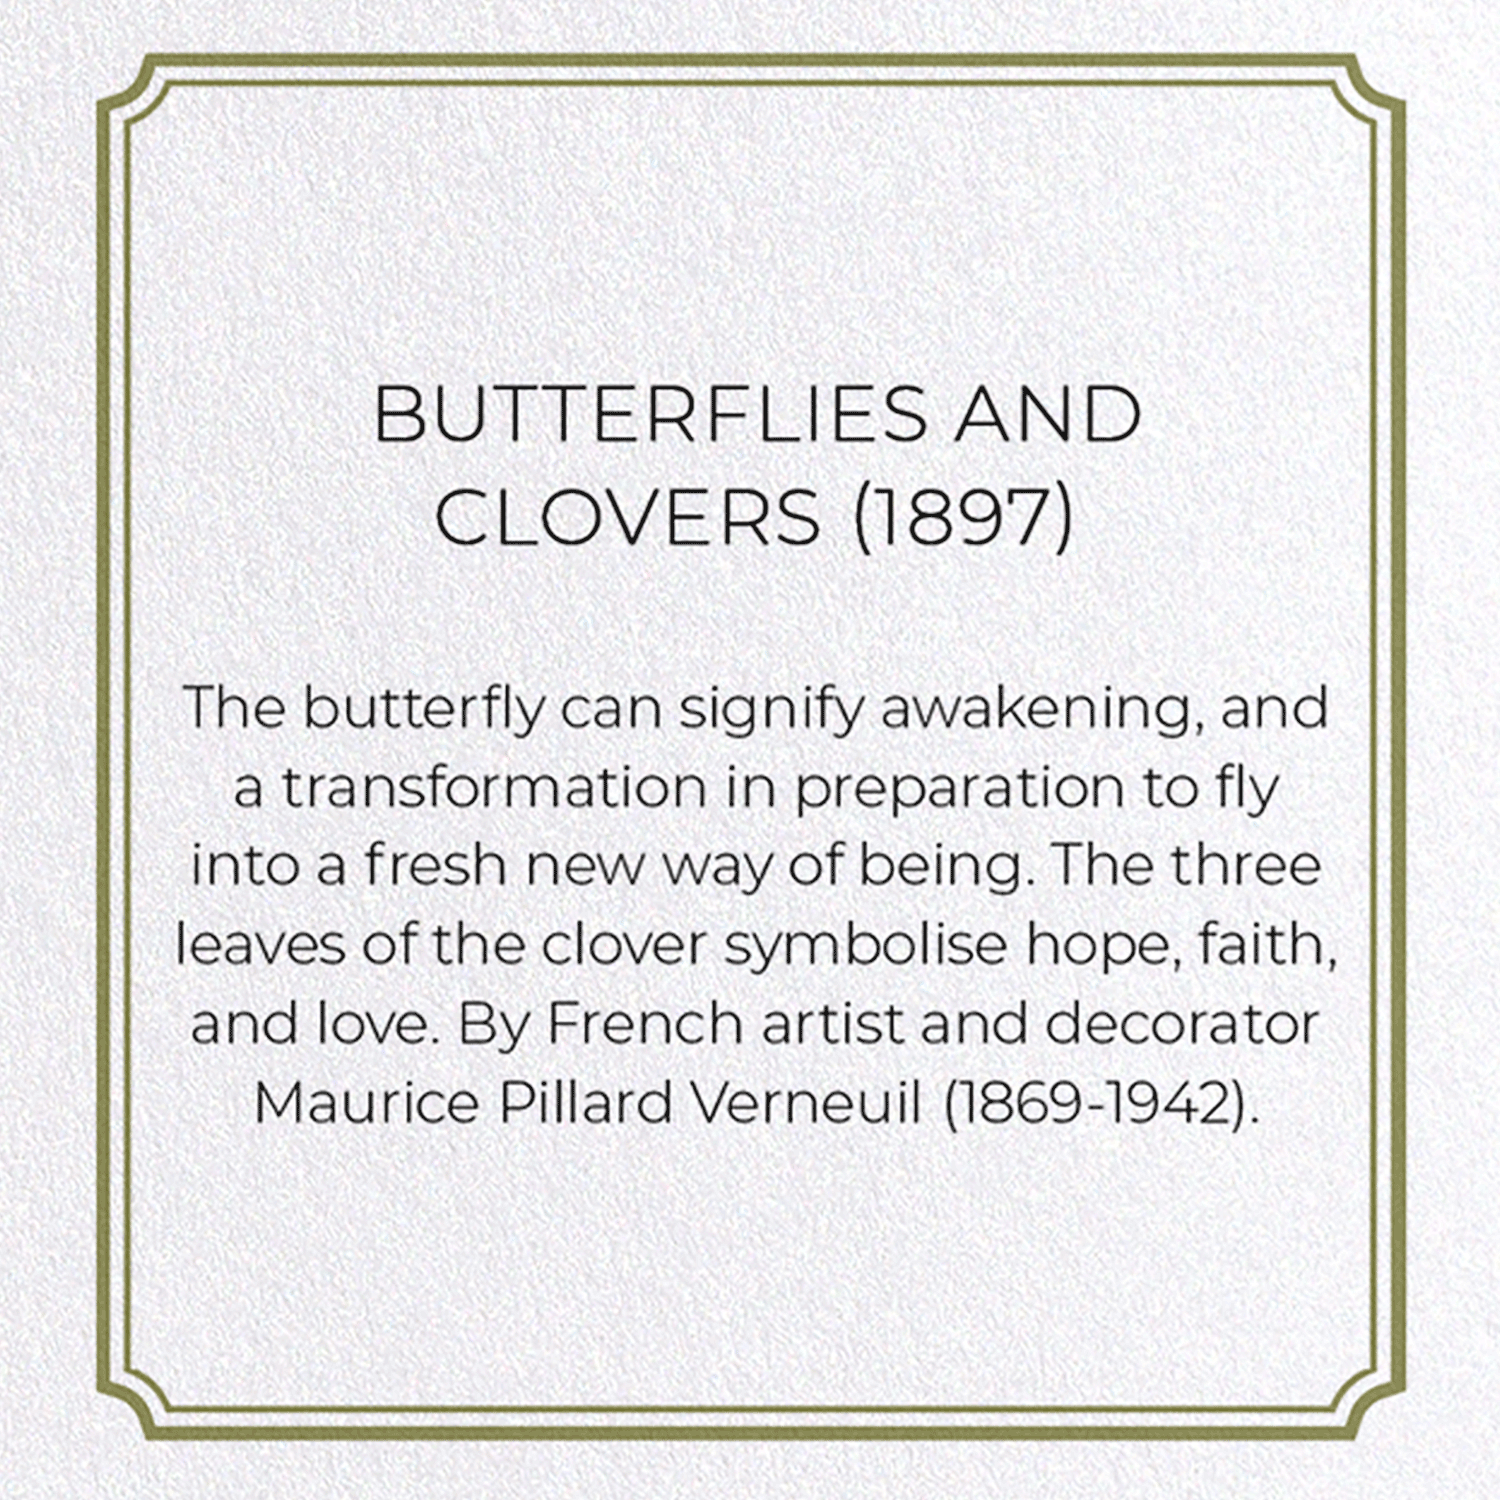 BUTTERFLIES AND CLOVERS (1897)